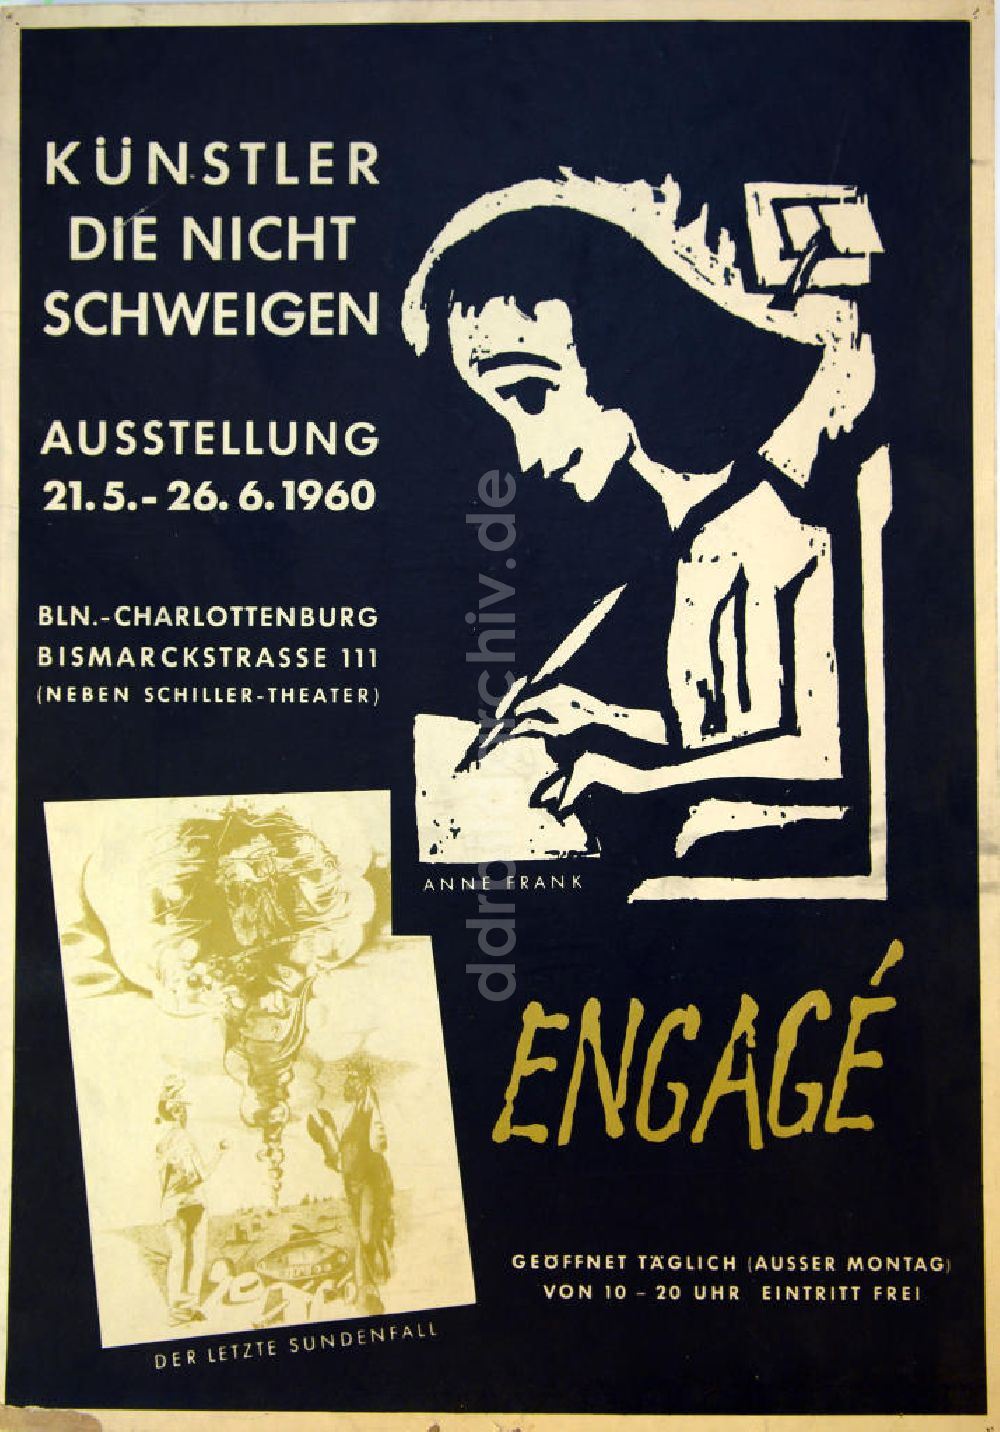 DDR-Fotoarchiv: Berlin - Plakat von der Ausstellung Künstler, die nicht schweigen, Engagé über Herbert Sandberg aus dem Jahr 1960